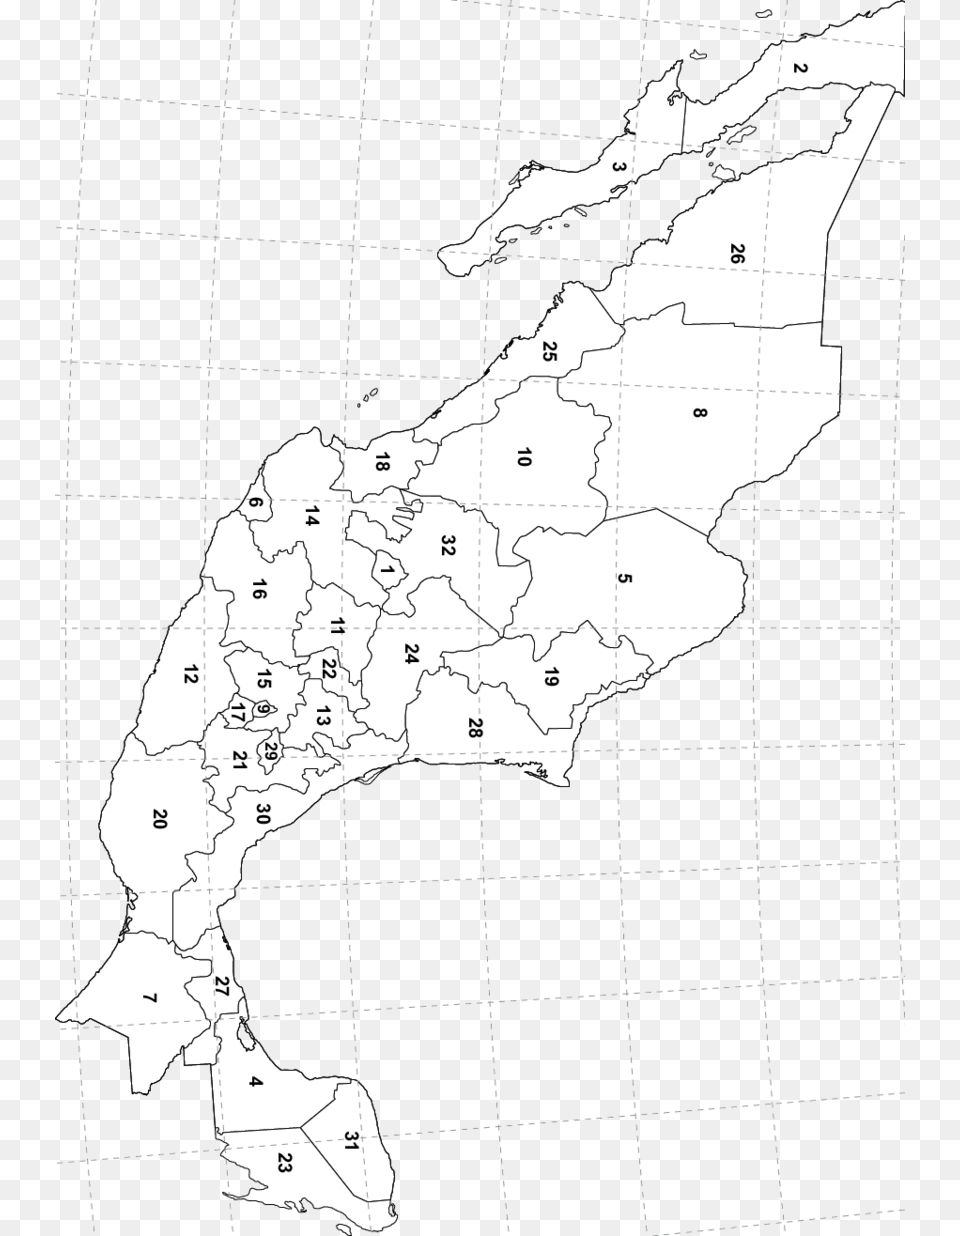 Entidad Federativa Con Numeros, Chart, Plot, Map, Atlas Png Image